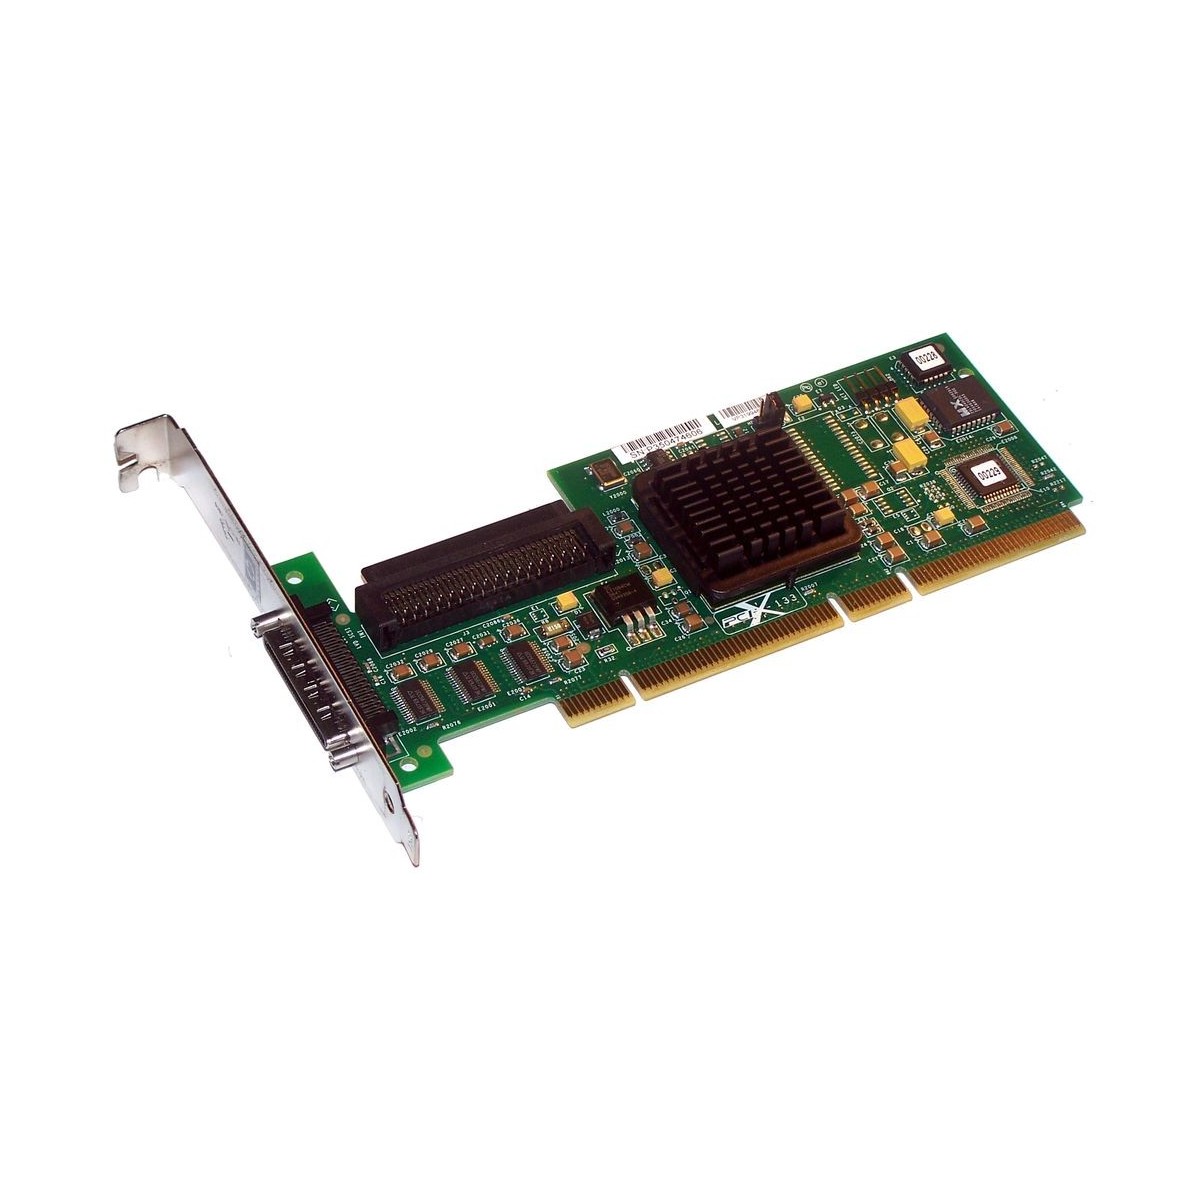 HP LSI LOGIC LSI20320C U320 SCSI PCI-X-133 403051-001